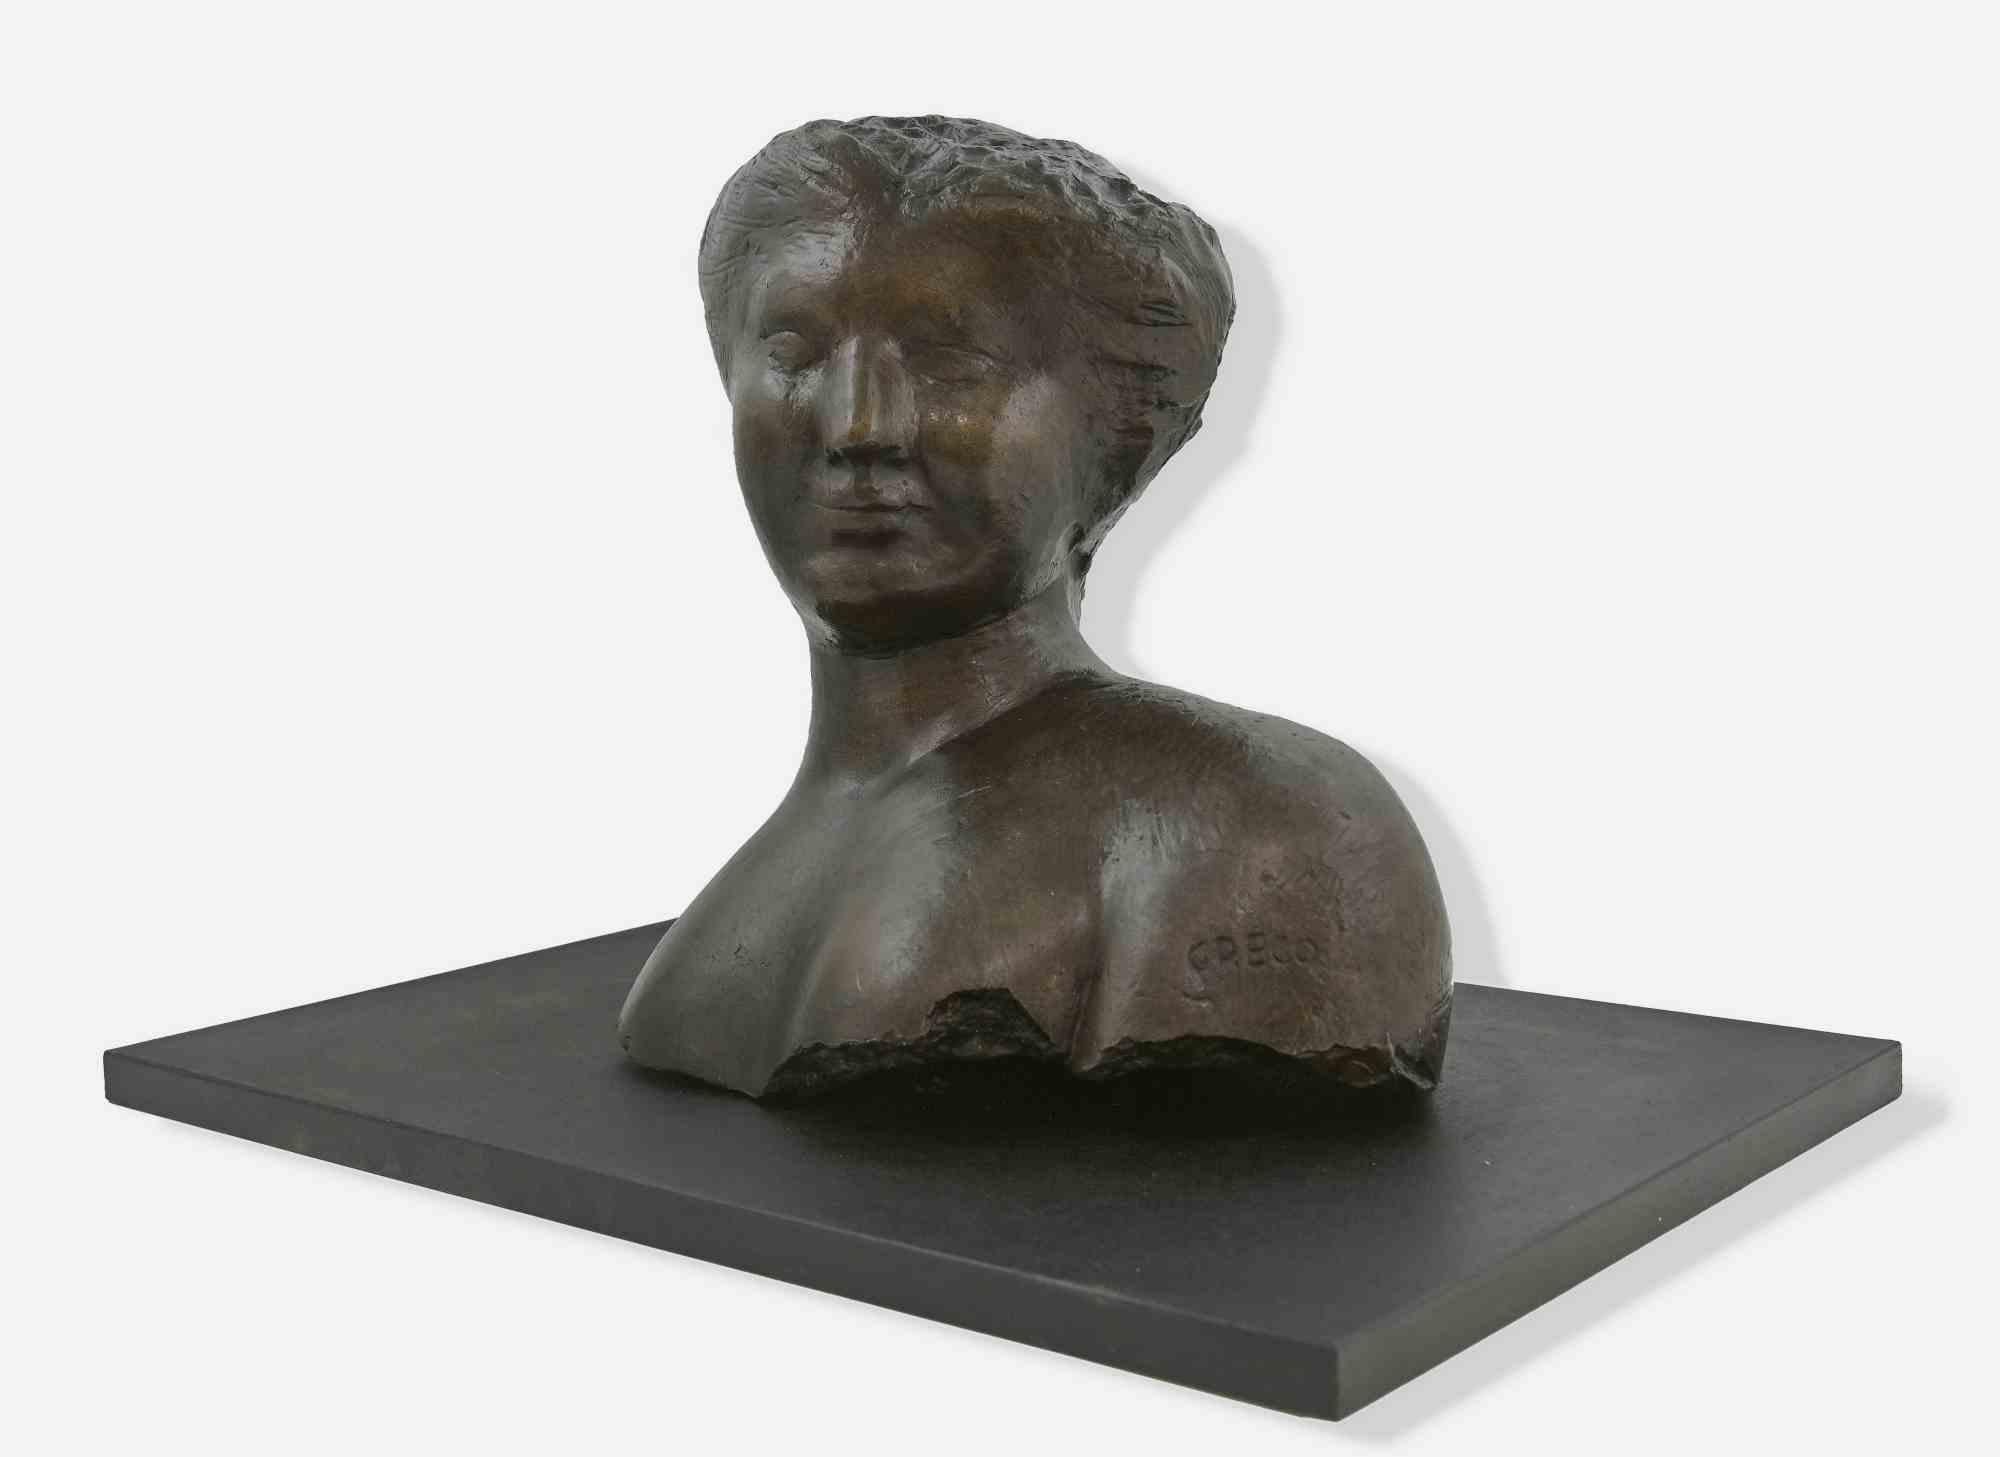 Buste de femme est une sculpture réalisée par Emilio Greco (1913-1955) dans la seconde moitié du XXe siècle. 

Femme avec les cheveux relevés et un soupçon de sourire.

Le buste est en bronze et repose sur un socle en bois noir.

 36x39 cm ; 38x54